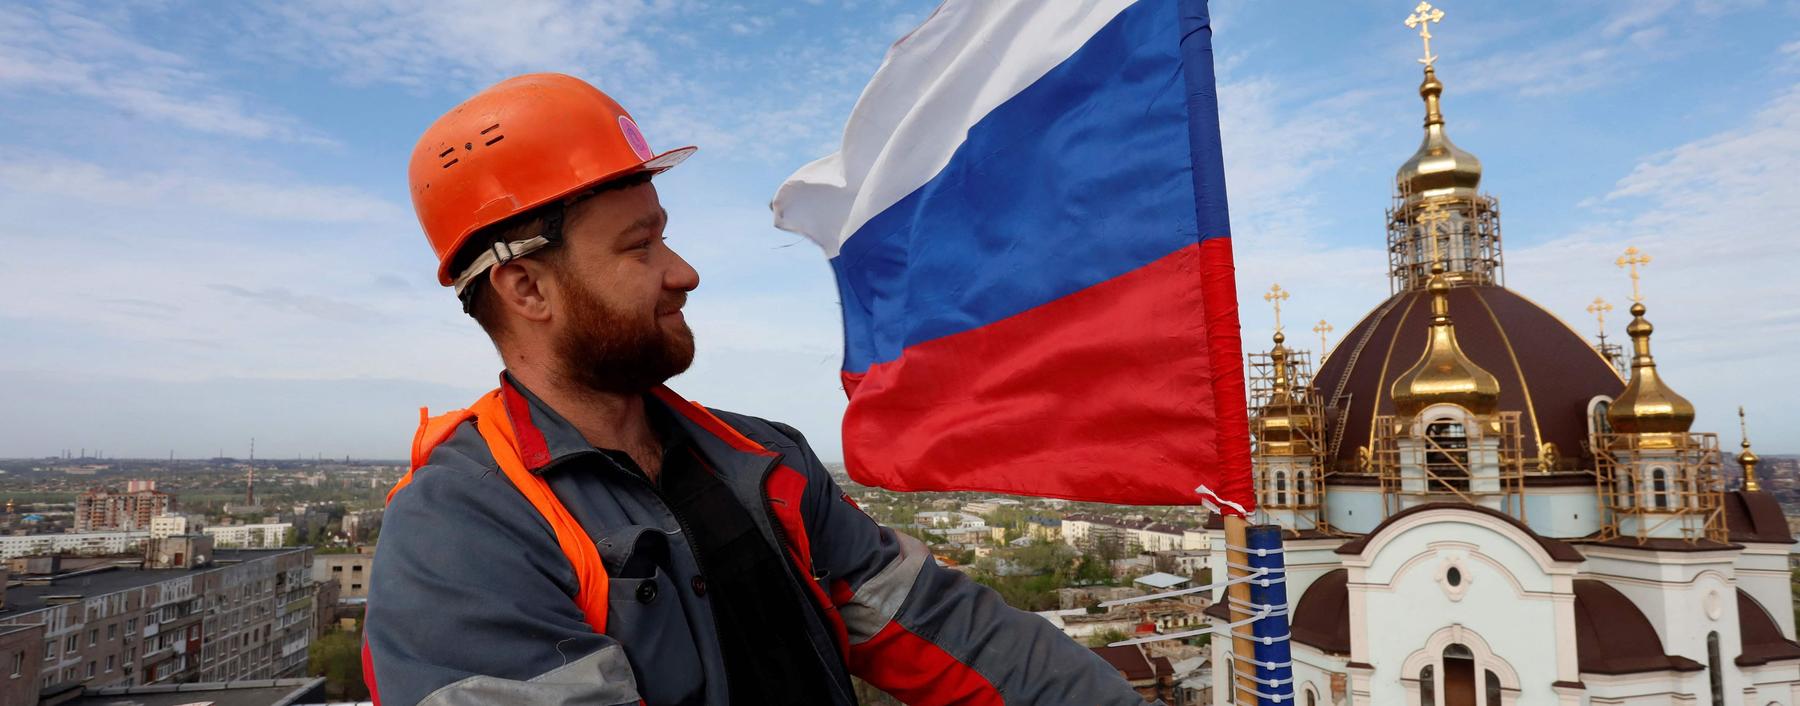 Wer macht sich der Hilfe für die Russen strafbar? Ein Bauarbeiter hisst eine russische Fahne auf dem Wasserturm in Mariupol. Die Stadt ist seit Mai 2022 unter russischer Kontrolle.